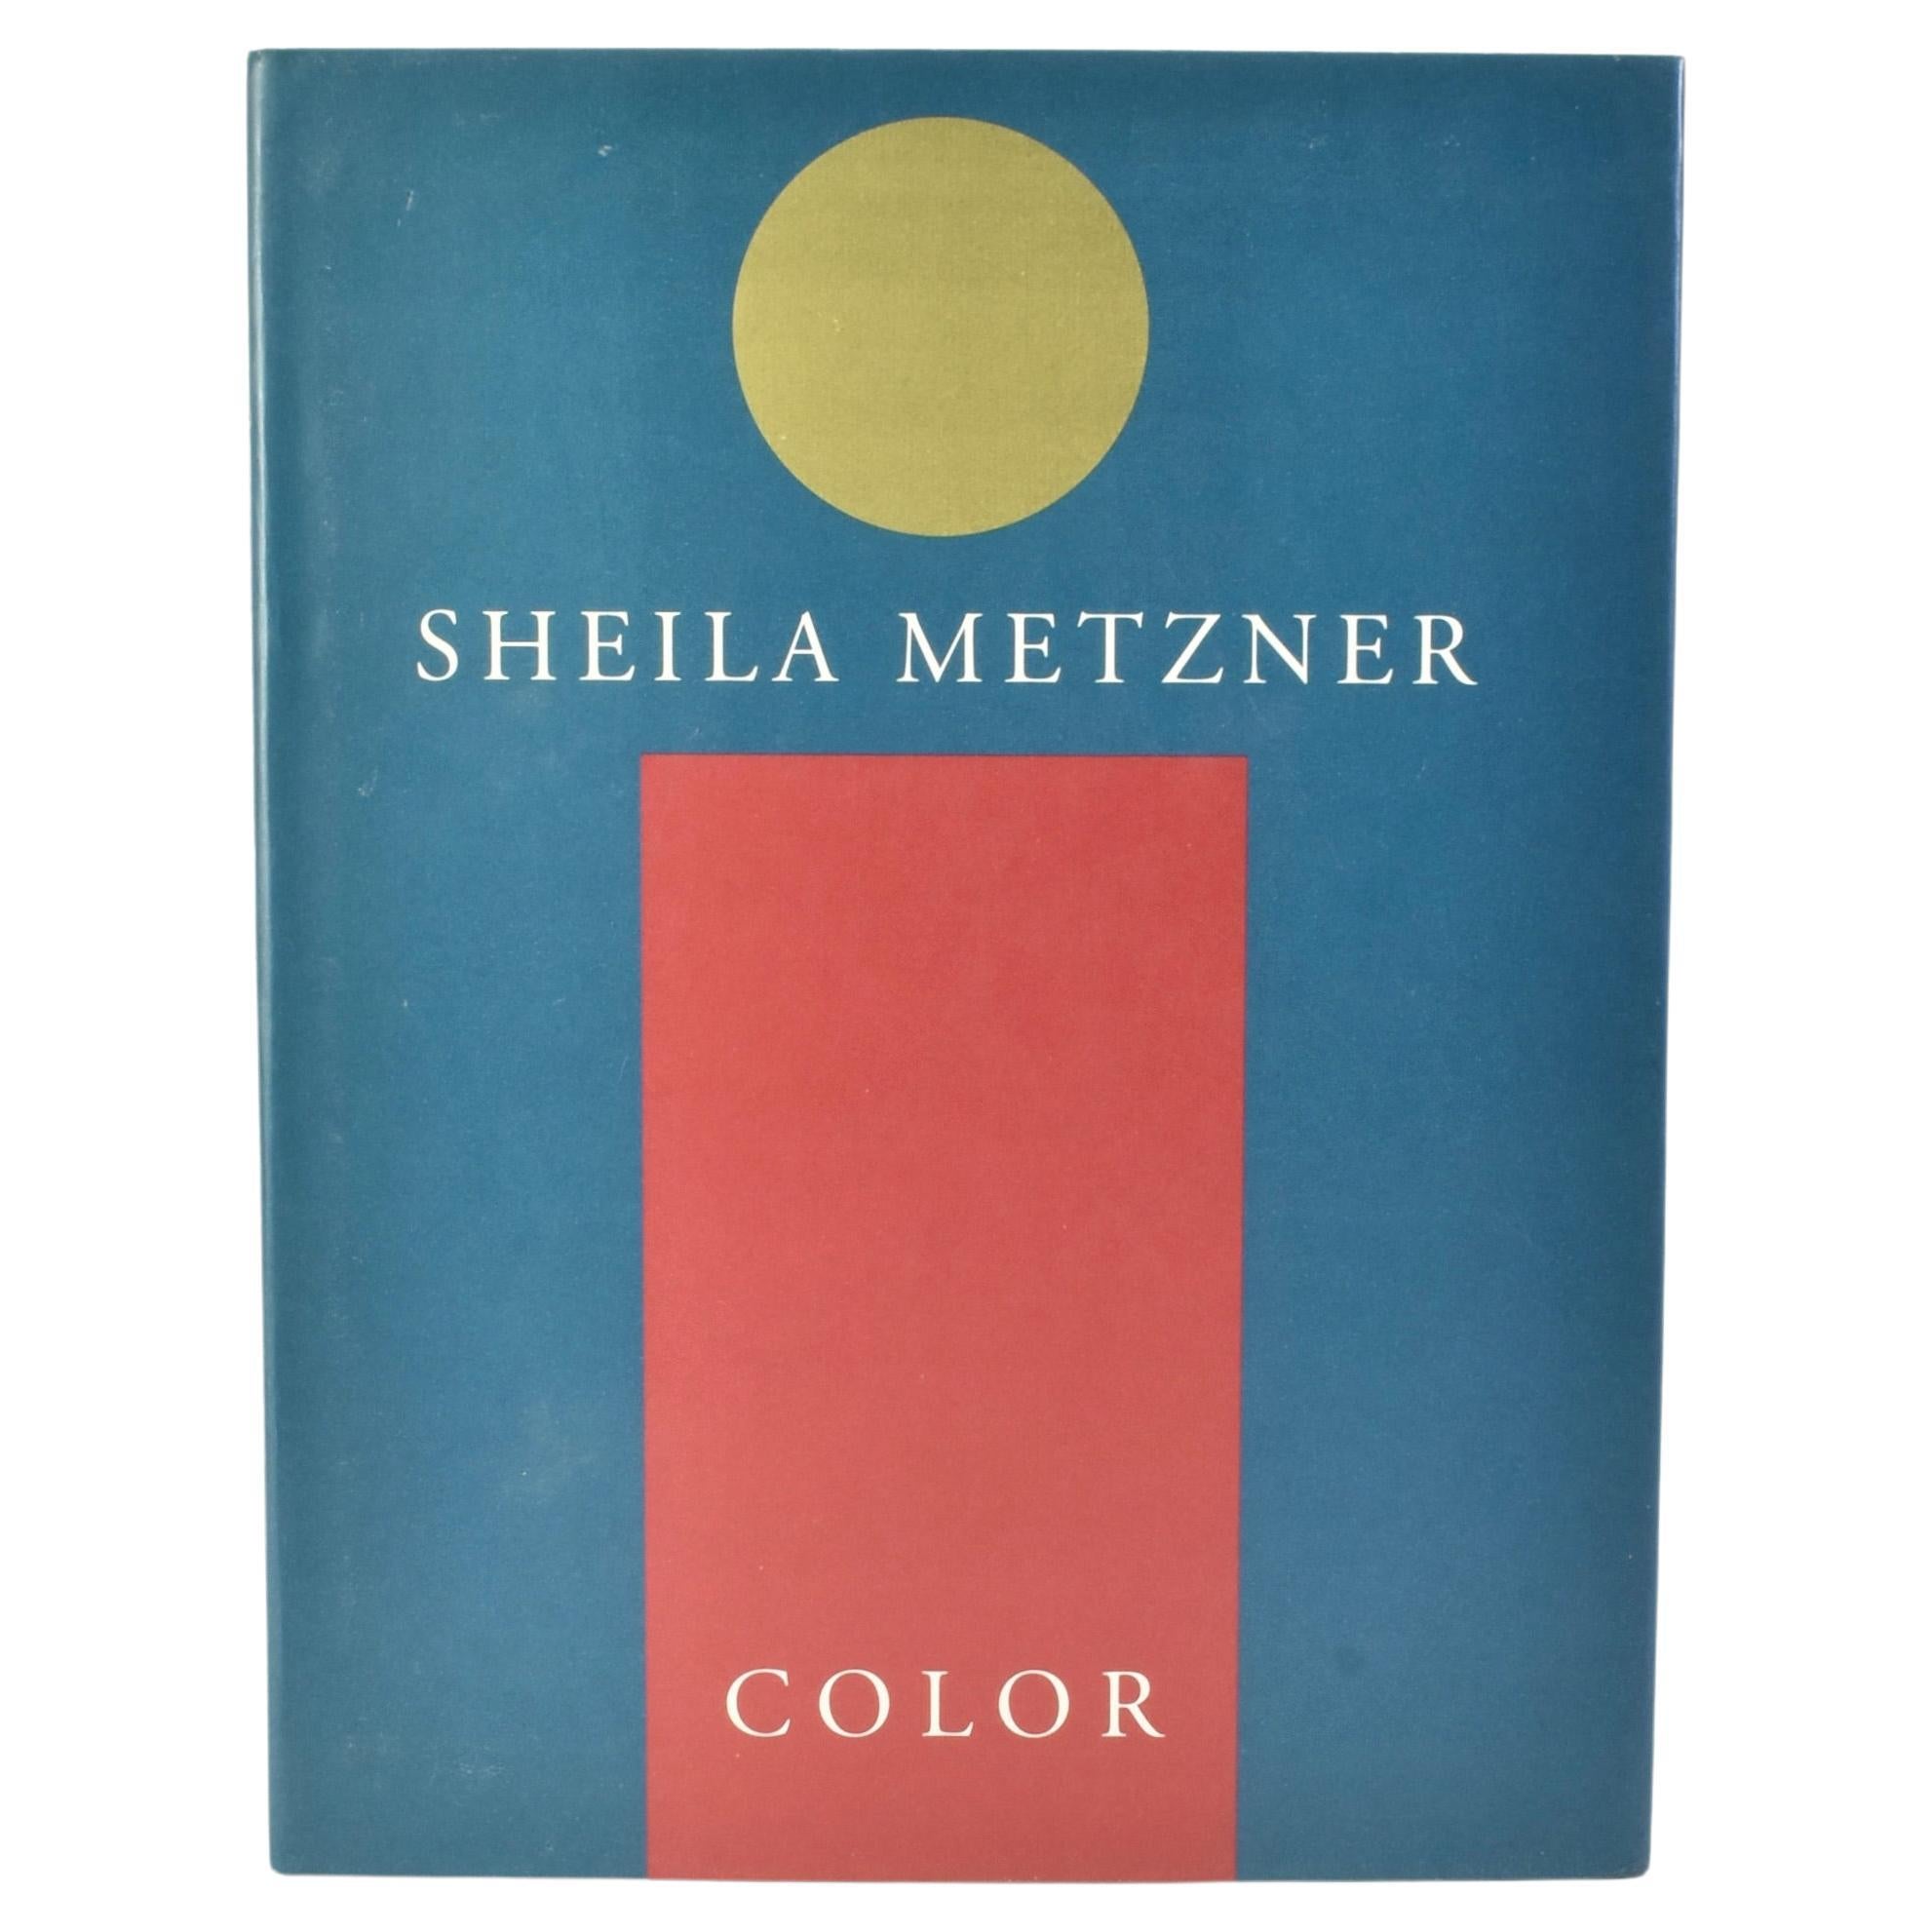 Sheila Metzner: Color 1991